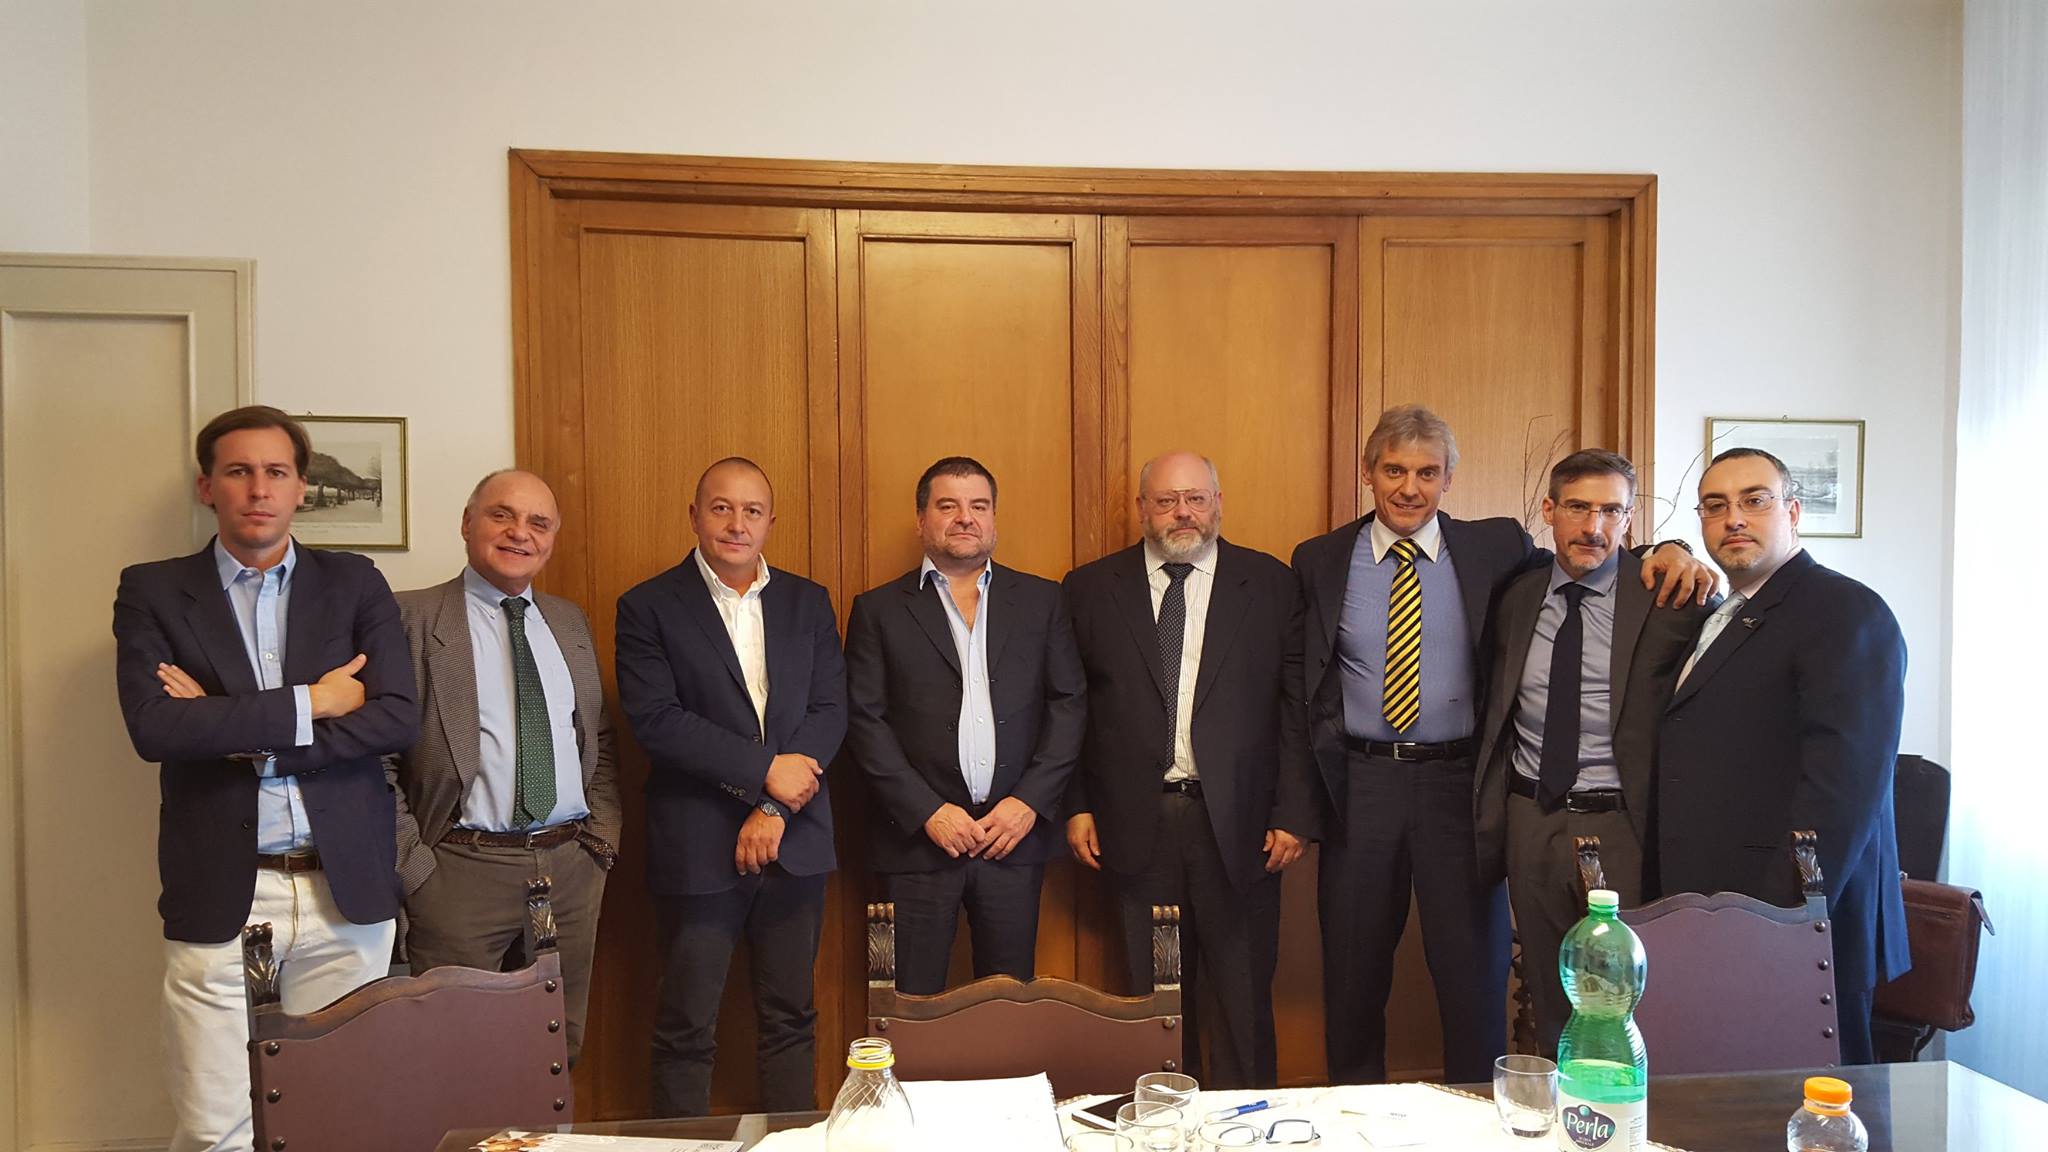 Il Comitato Direttiva 477 incontra Fiocchi ed ANPAM | all4shooters